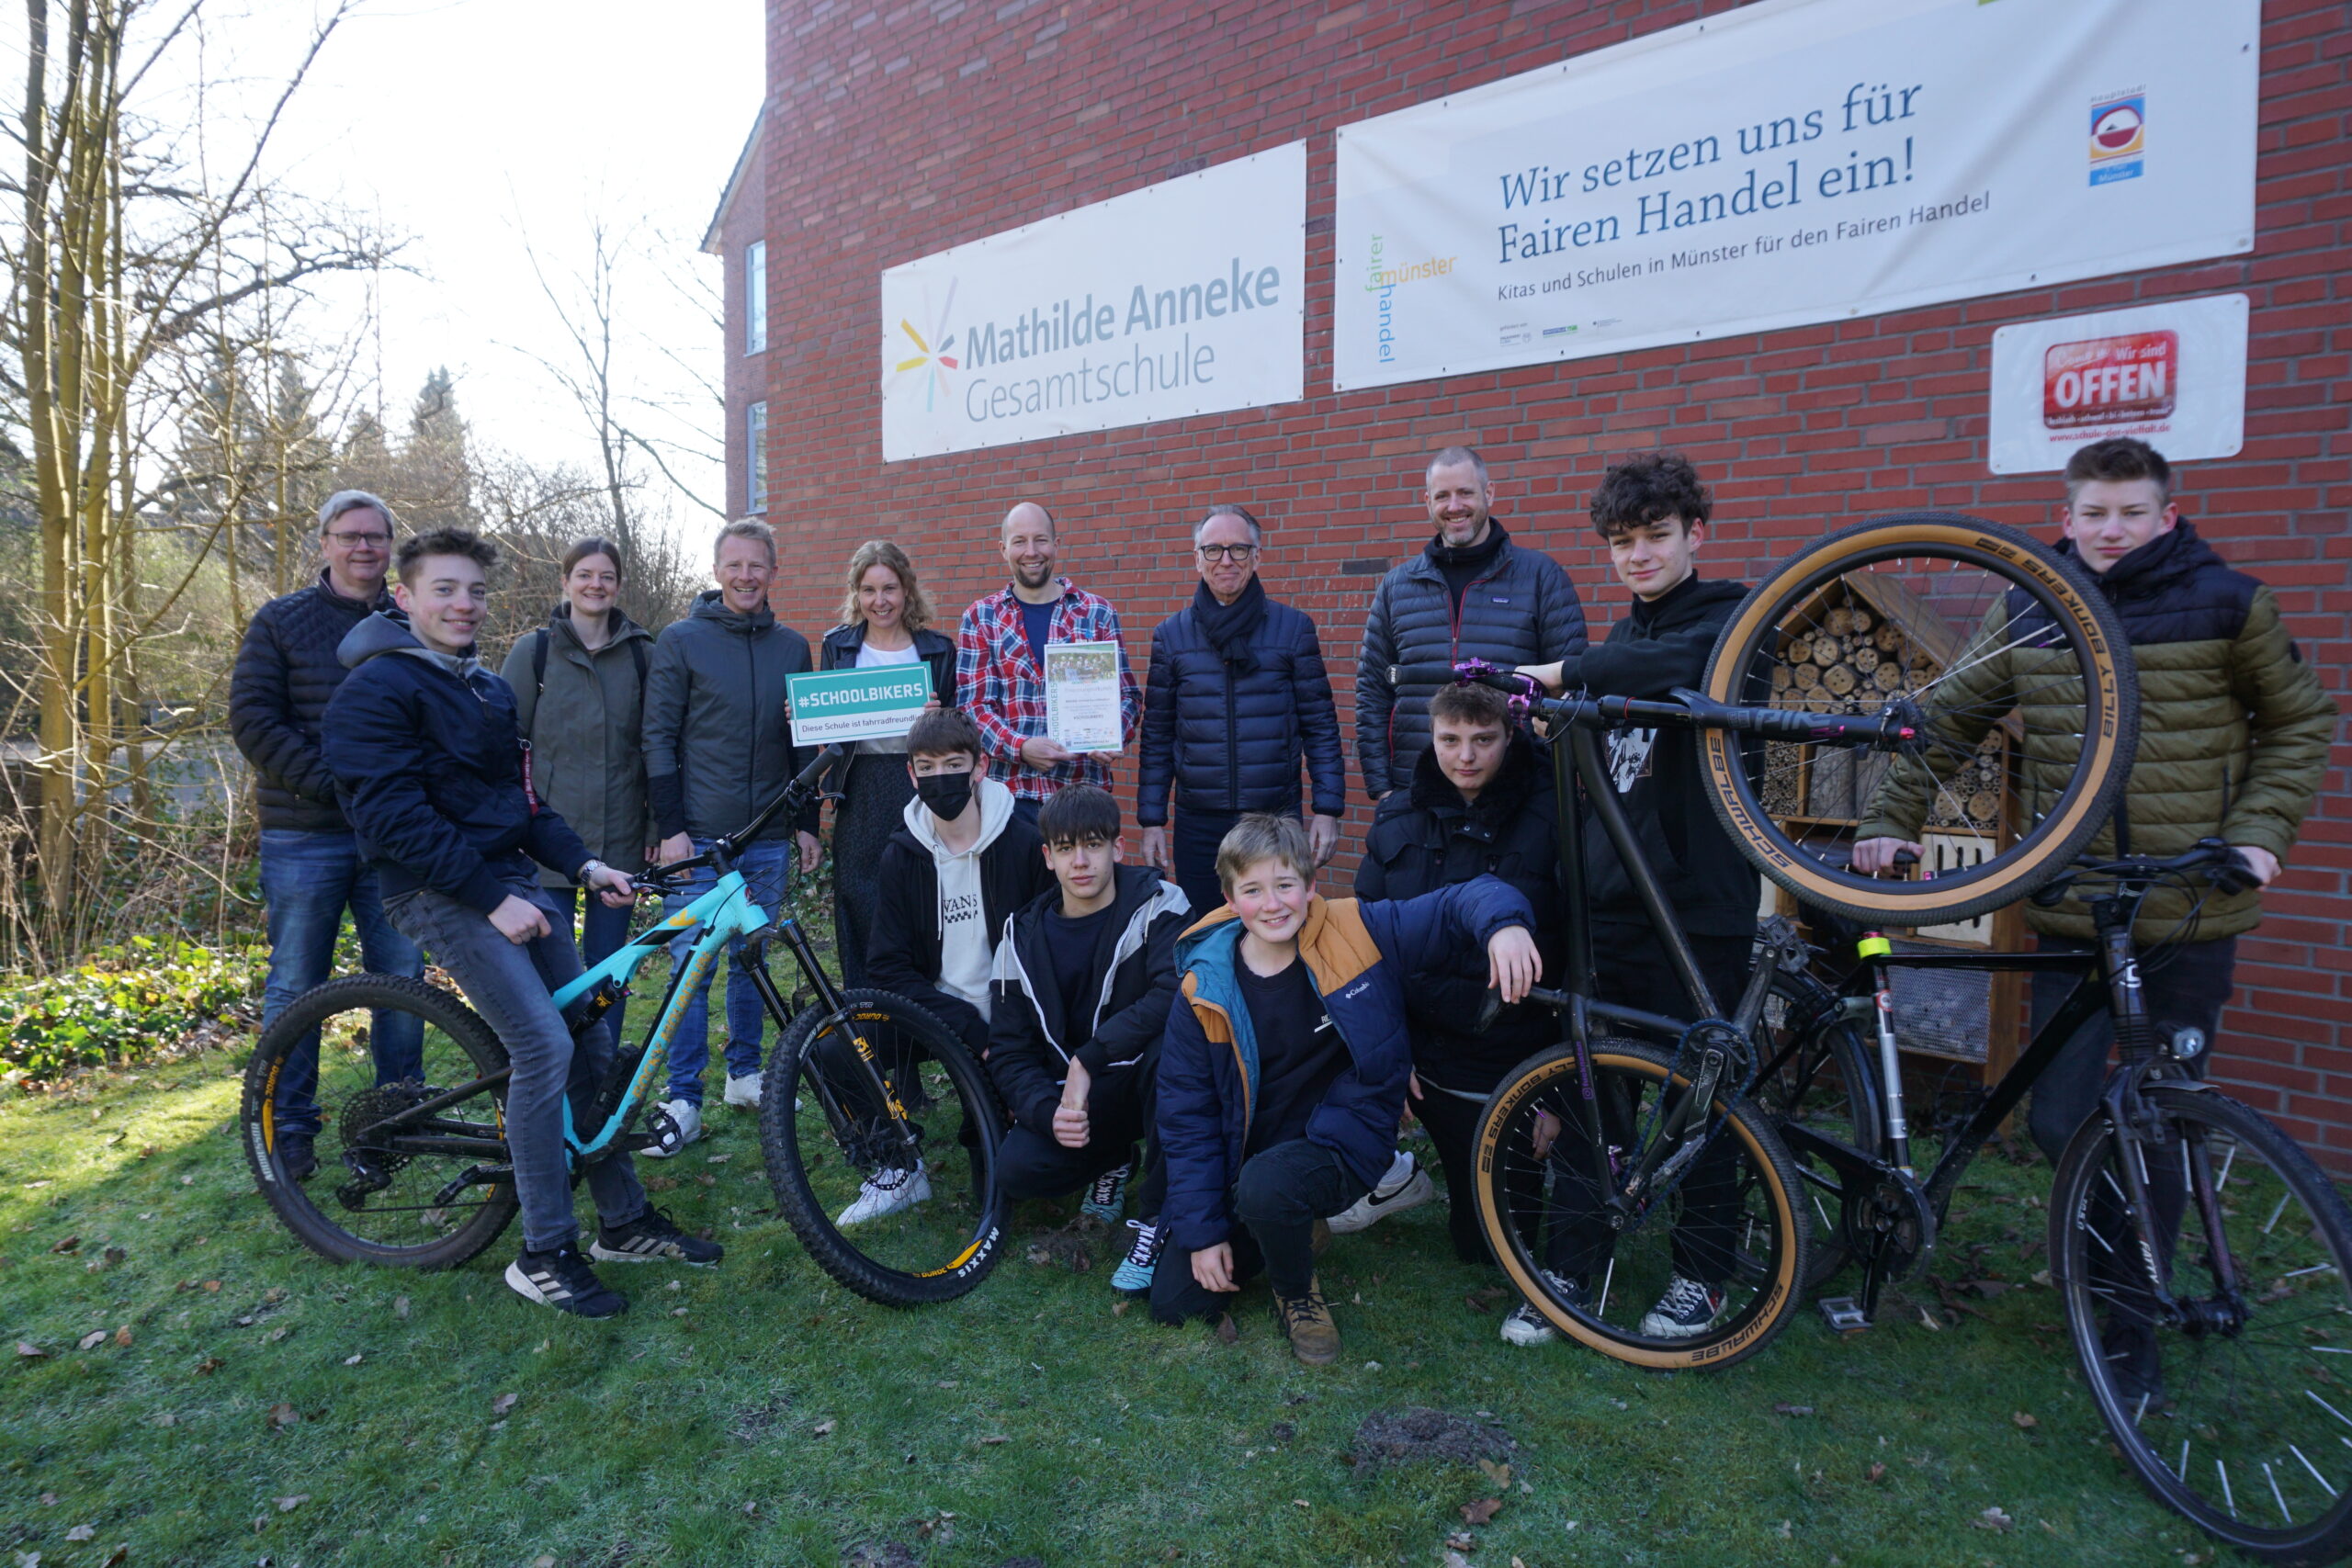 Schüler mit ihren Fahrrädern vor dem Schulgebäude der Mathilde Anneke Gesamtschule, dahinter die Schulleiterin und weitere Lehrer beziehungsweise Erwachsene